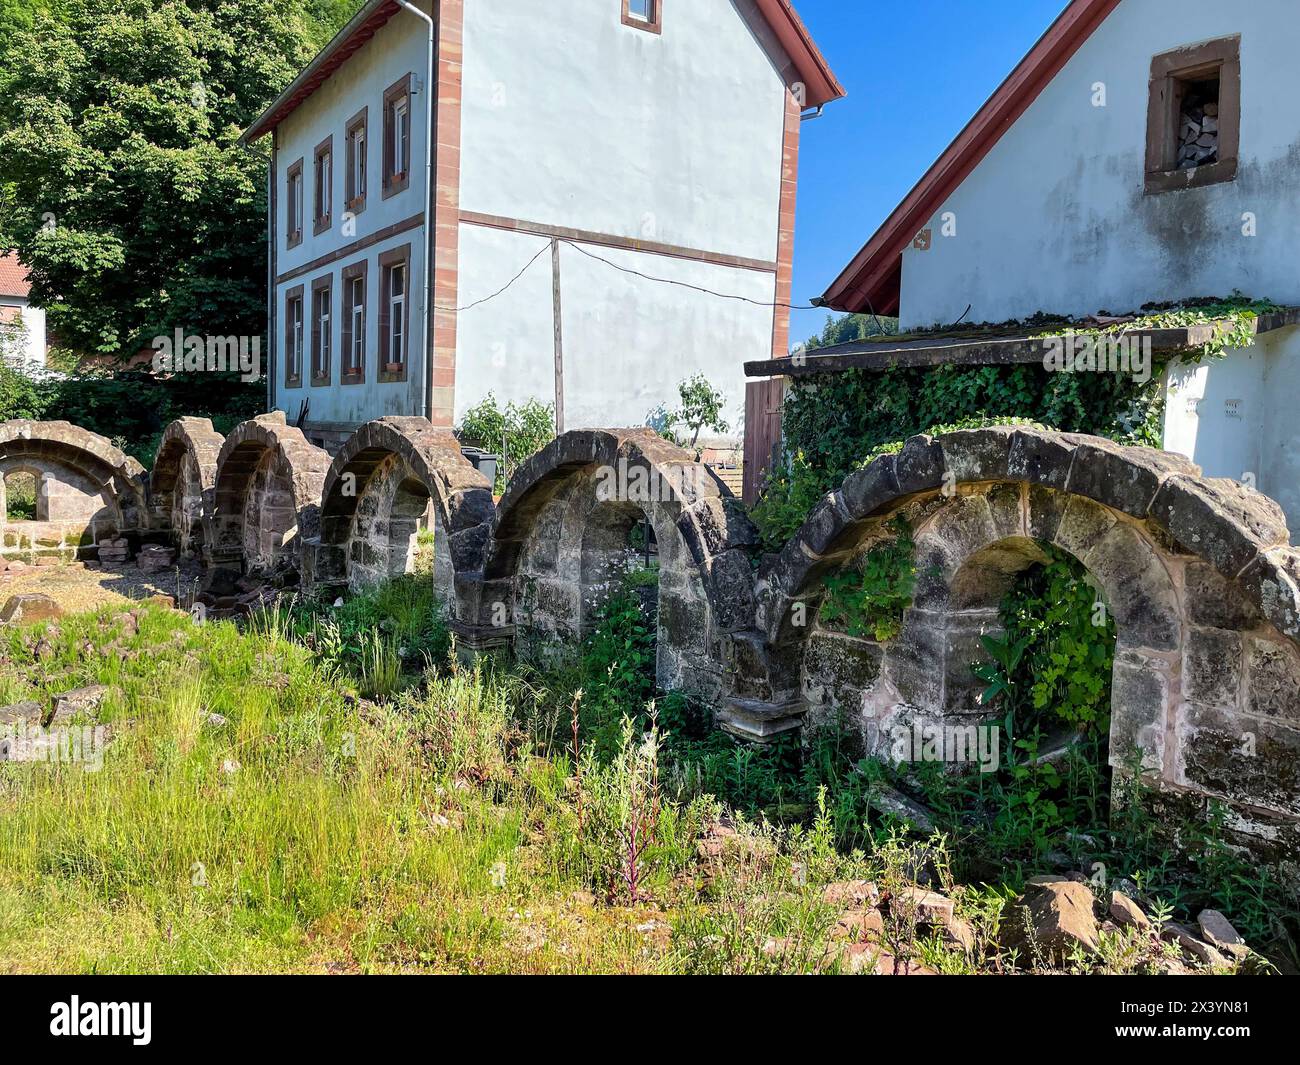 Ruine des Nonnen kloster Krauftal, in Graufthal im Elsass Frankreich Foto Stock